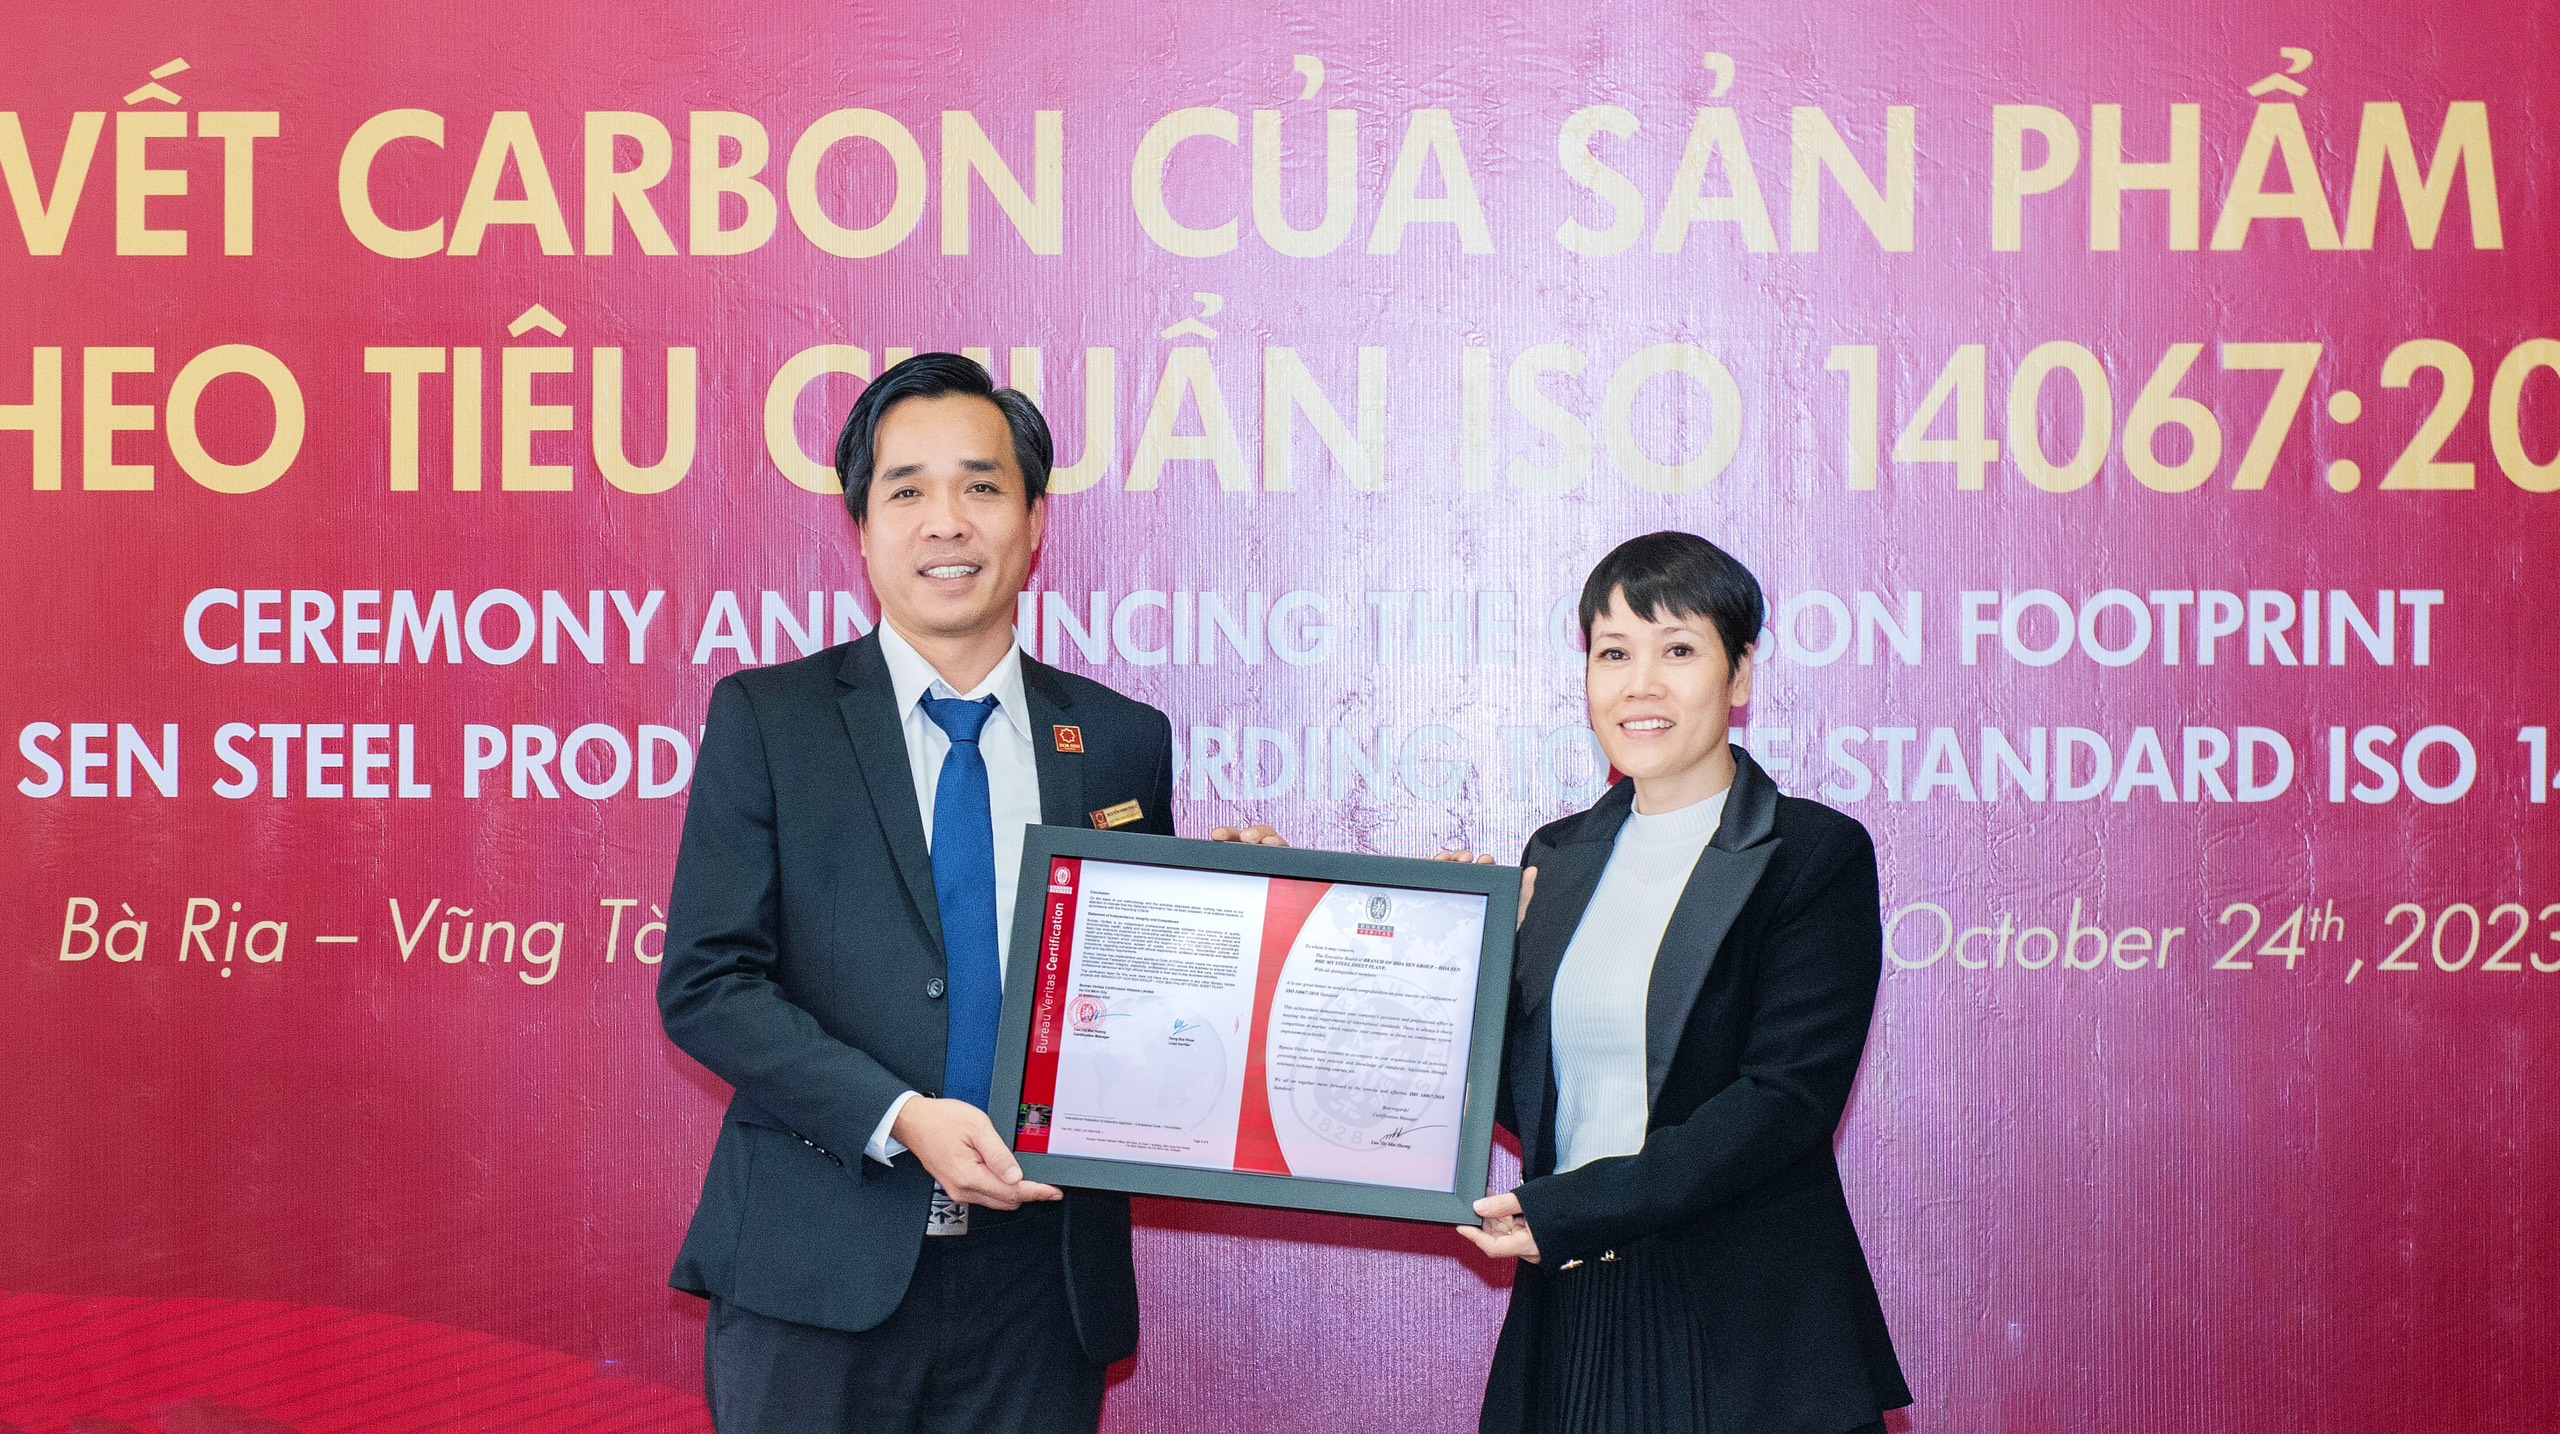 Ông Nguyễn Minh Phúc – Phó Tổng Giám đốc phụ trách Sản xuất Tập đoàn Hoa Sen nhận chứng nhận ISO 140672018 từ đại diện Bureau Veritas Việt Nam